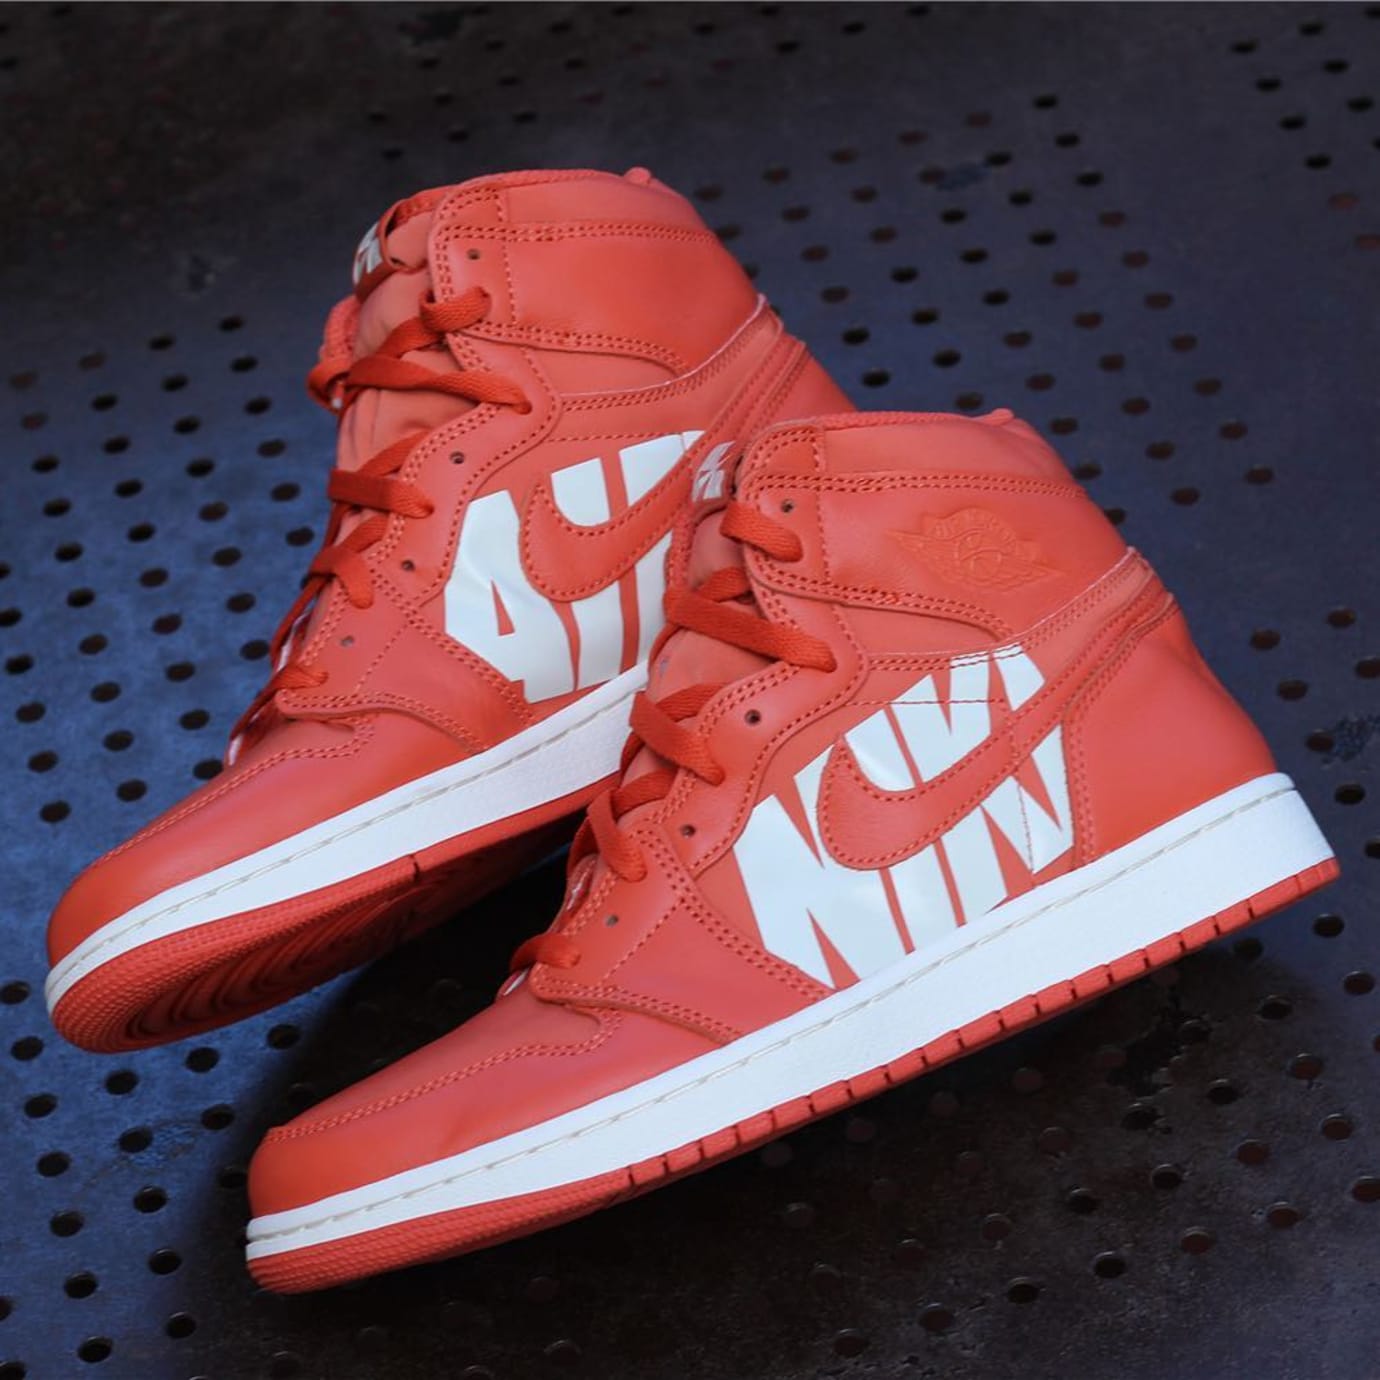 Air Jordan 1 Orange Nike Swoosh Release Date Pair